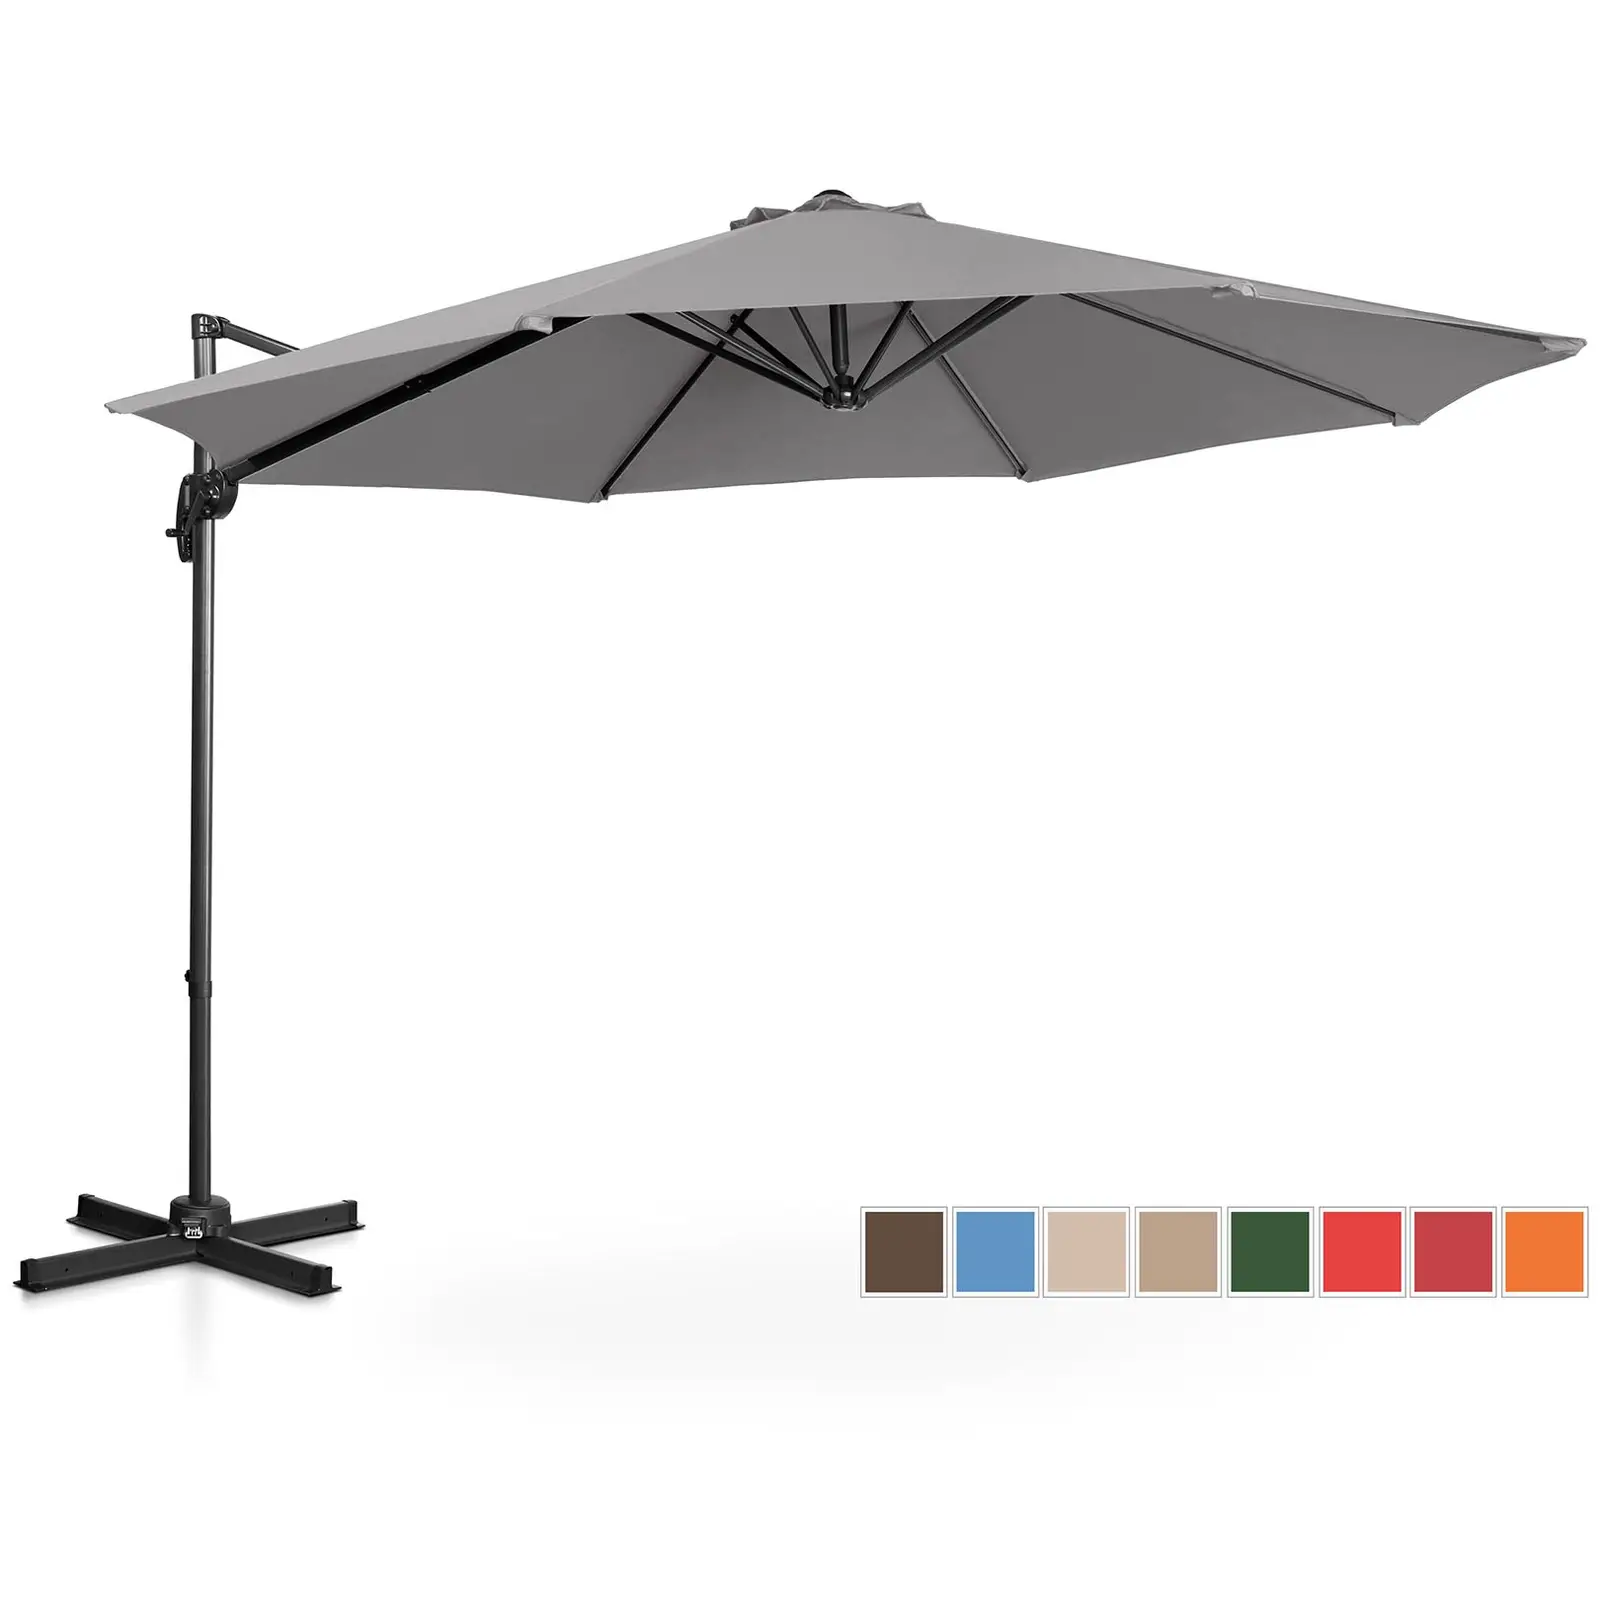 Aurinkovarjo - tummanharmaa  - pyöreä - Ø 300 cm - kallistettava ja käännettävä